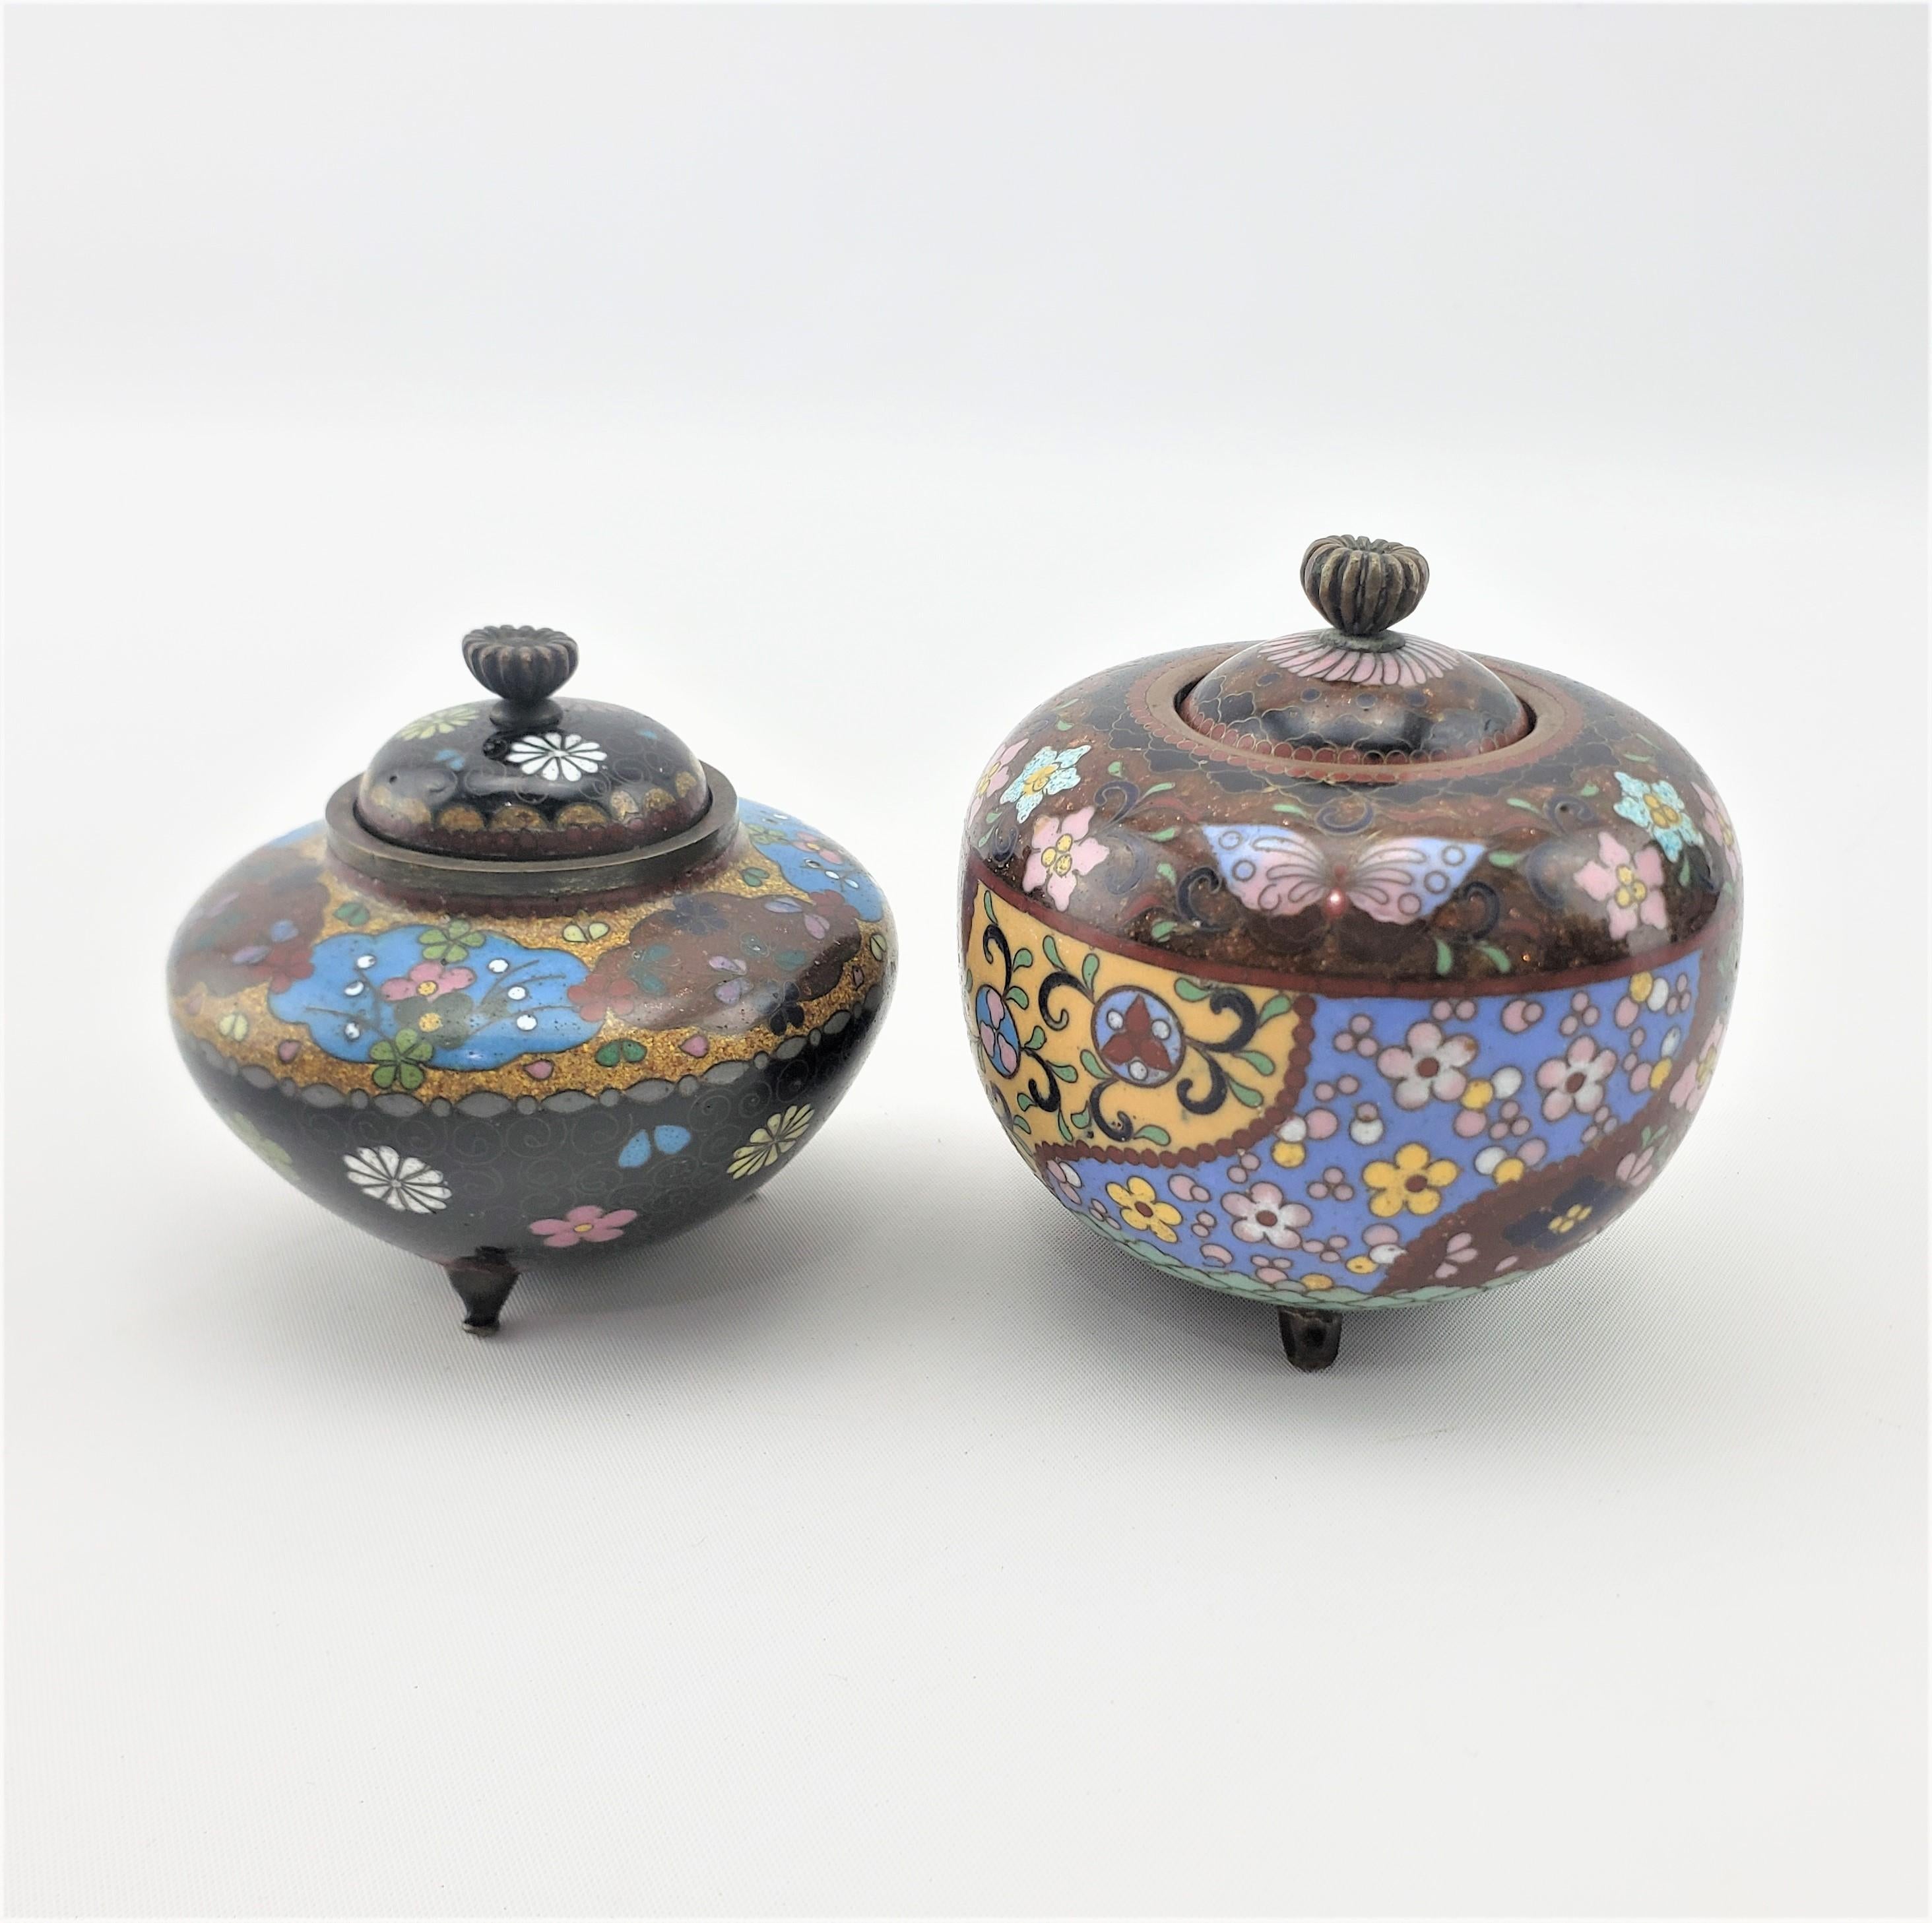 Dieses Paar antiker, mit Cloisonné überzogener Krüge oder Urnen ist unsigniert, stammt aber aus Japan und wurde um 1900 im japanischen Exportstil hergestellt. Das Paar ist in gedeckten Tönen gehalten und mit einem floralen Motiv verziert.